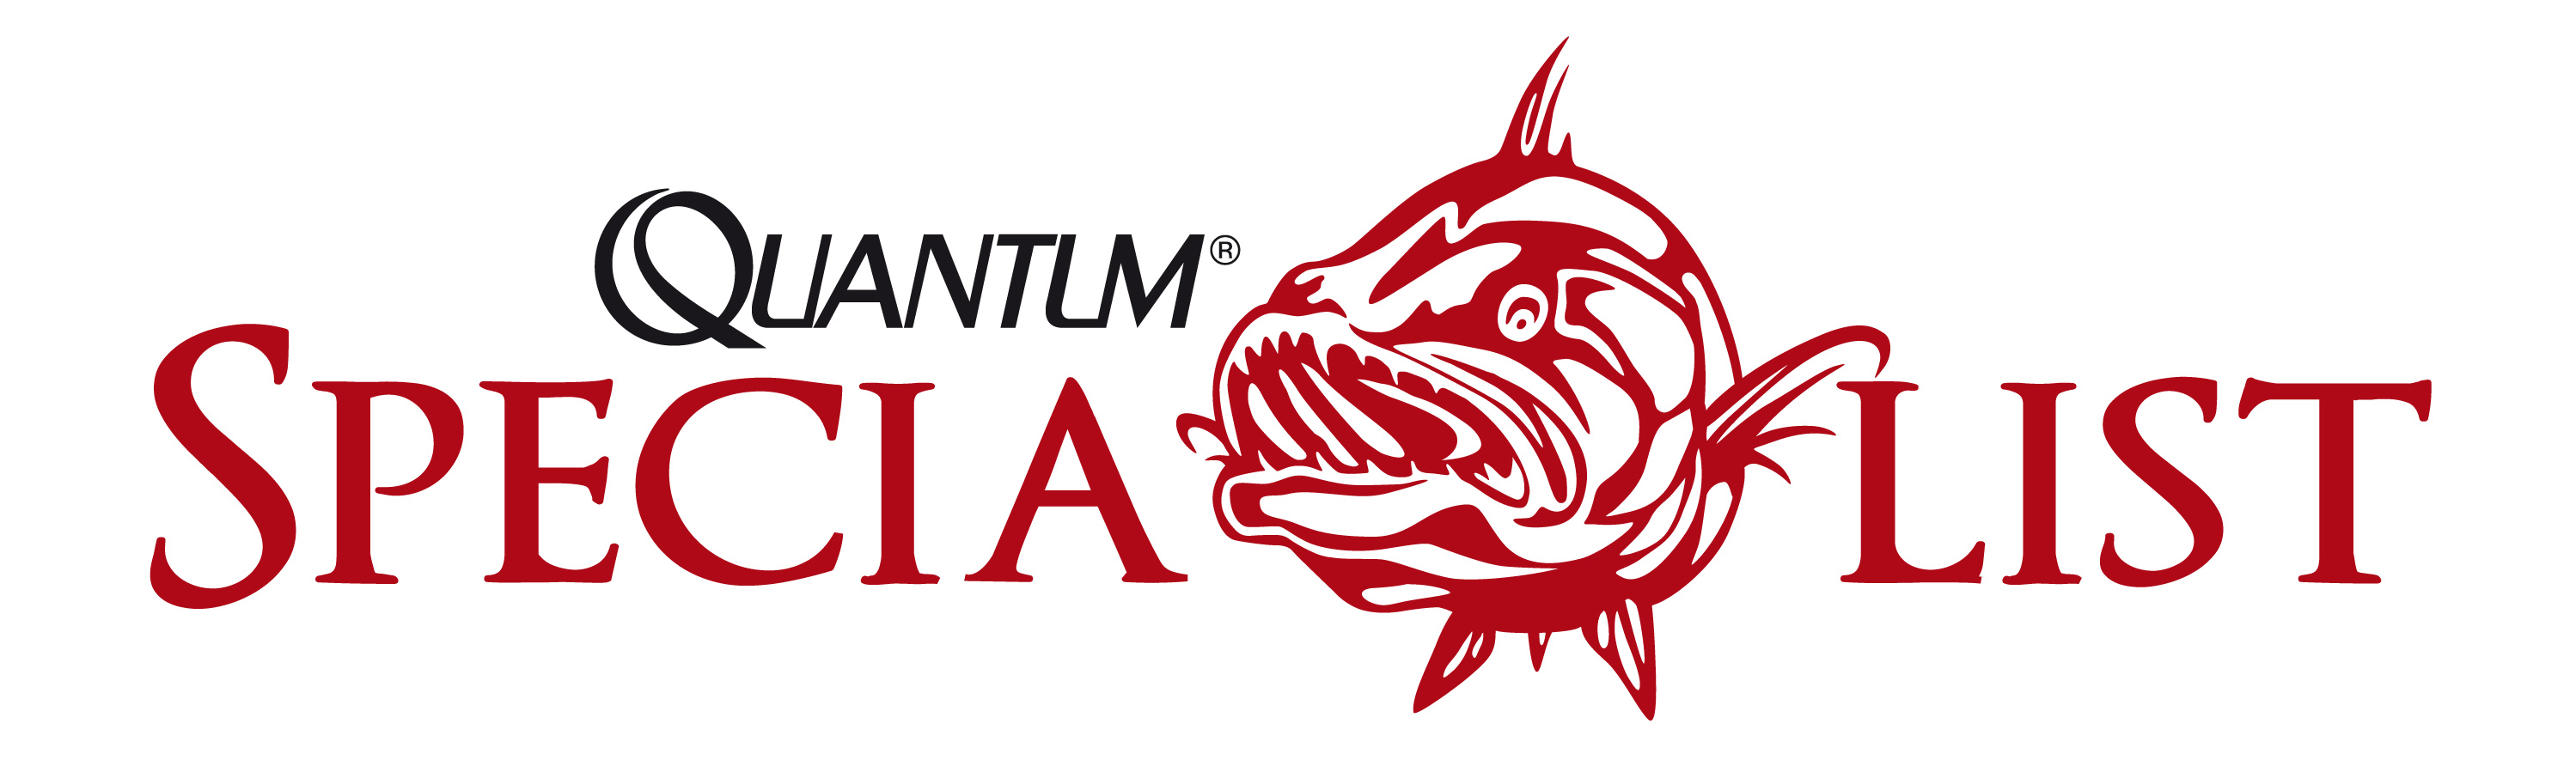 quantum specialist logo